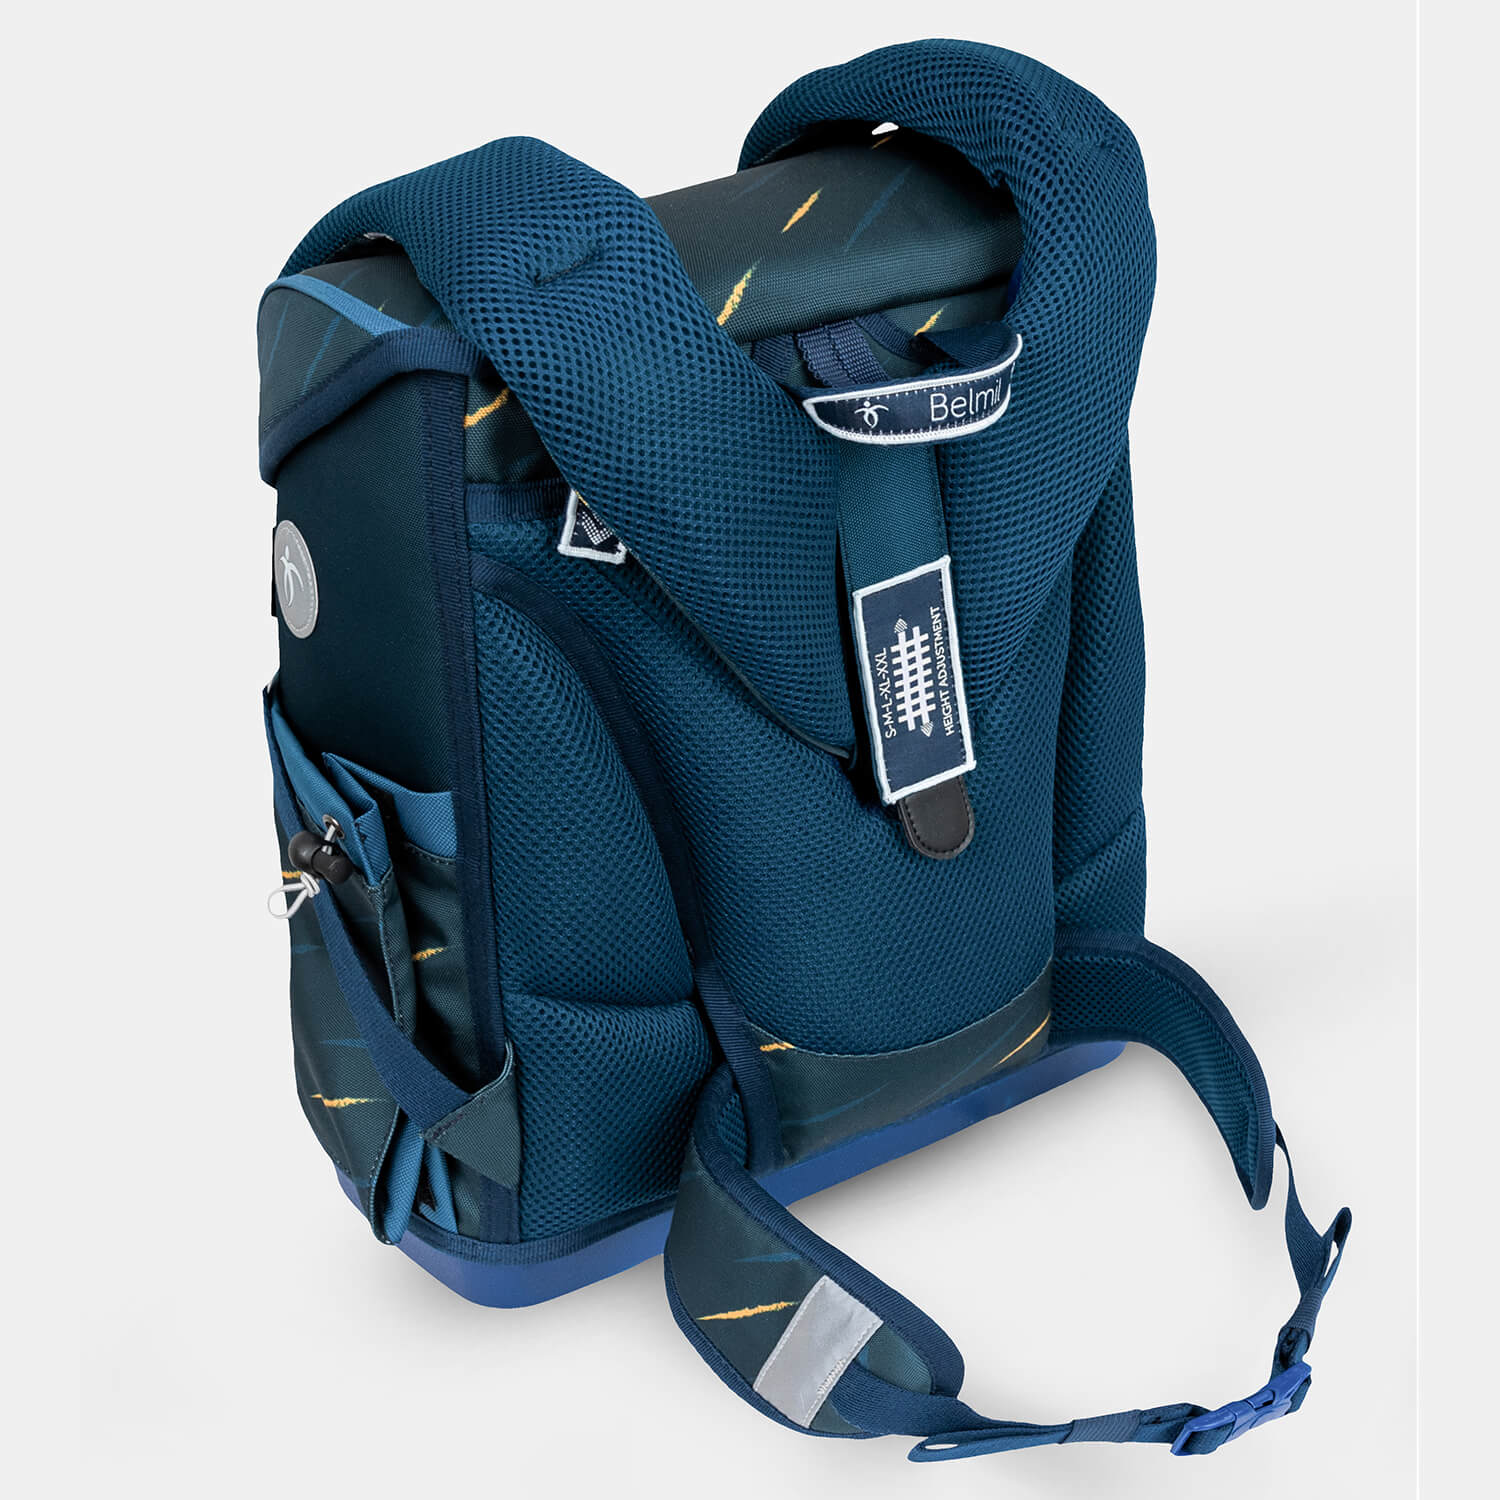 Compact Plus Orion Blue Schoolbag set 5pcs.